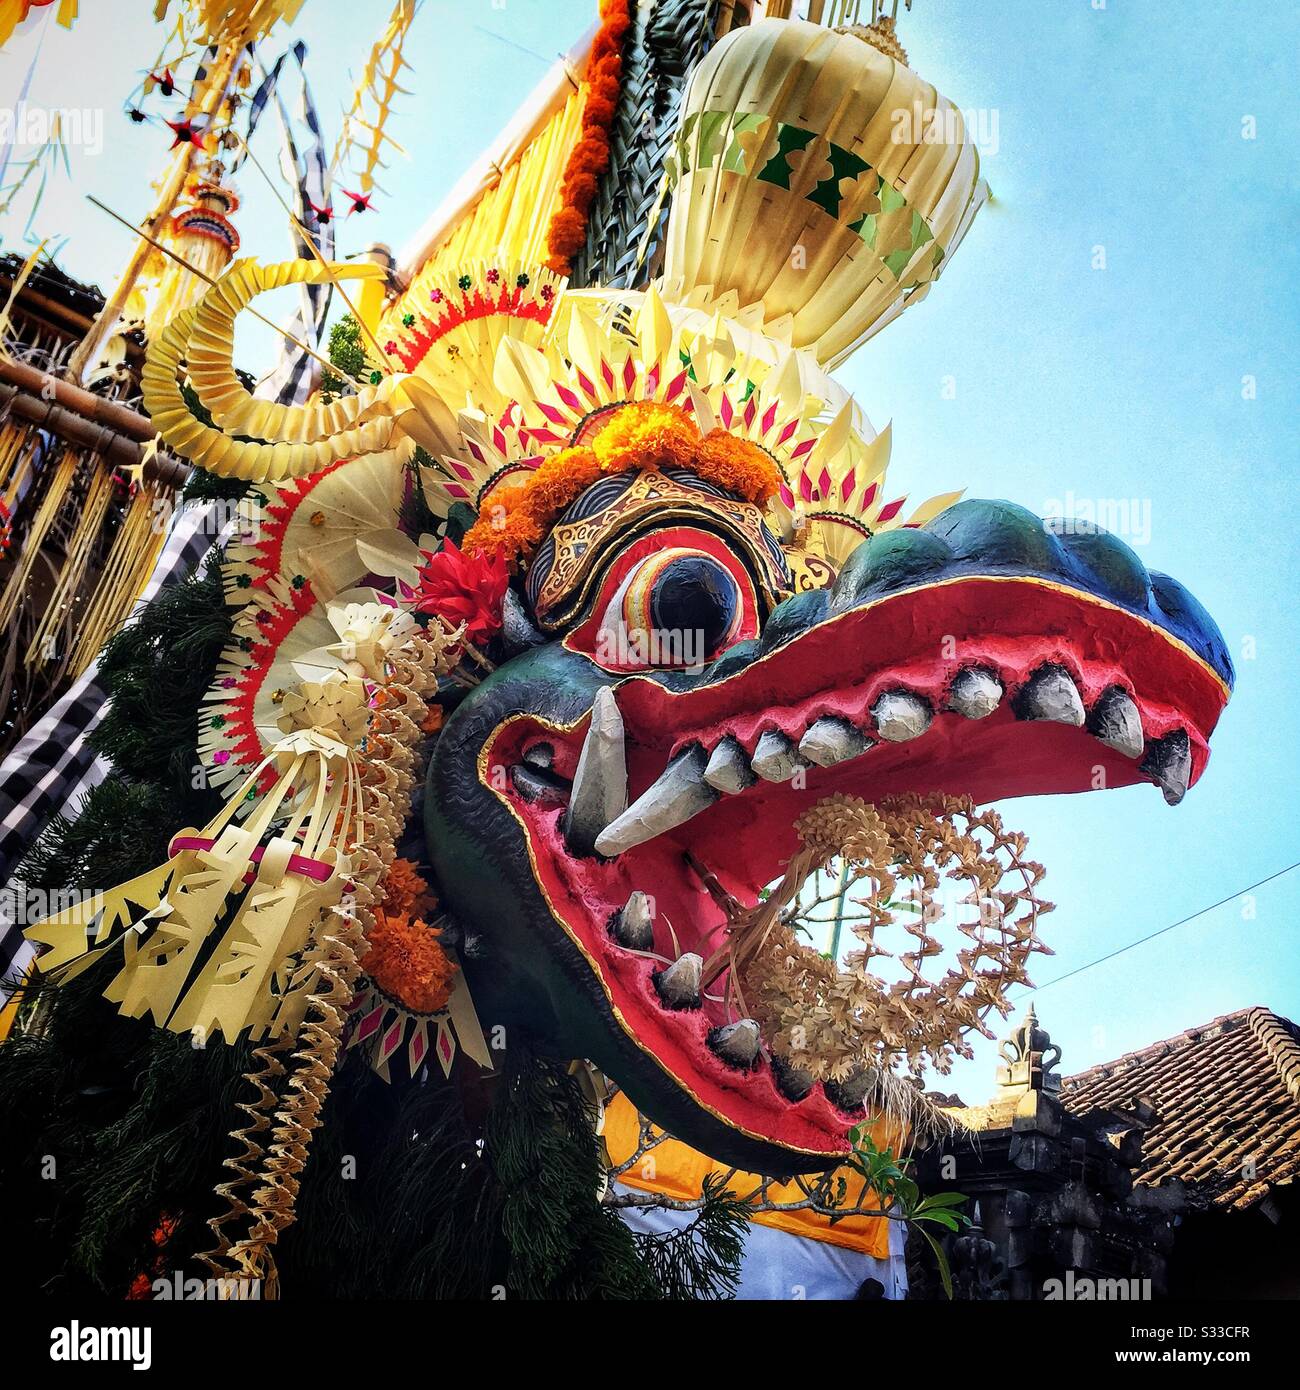 Le papier peint traditionnel maché et le dragon tissé de feuilles de palmier, une décoration de rue pour un festival religieux à Ubud, Bali, Indonésie Banque D'Images